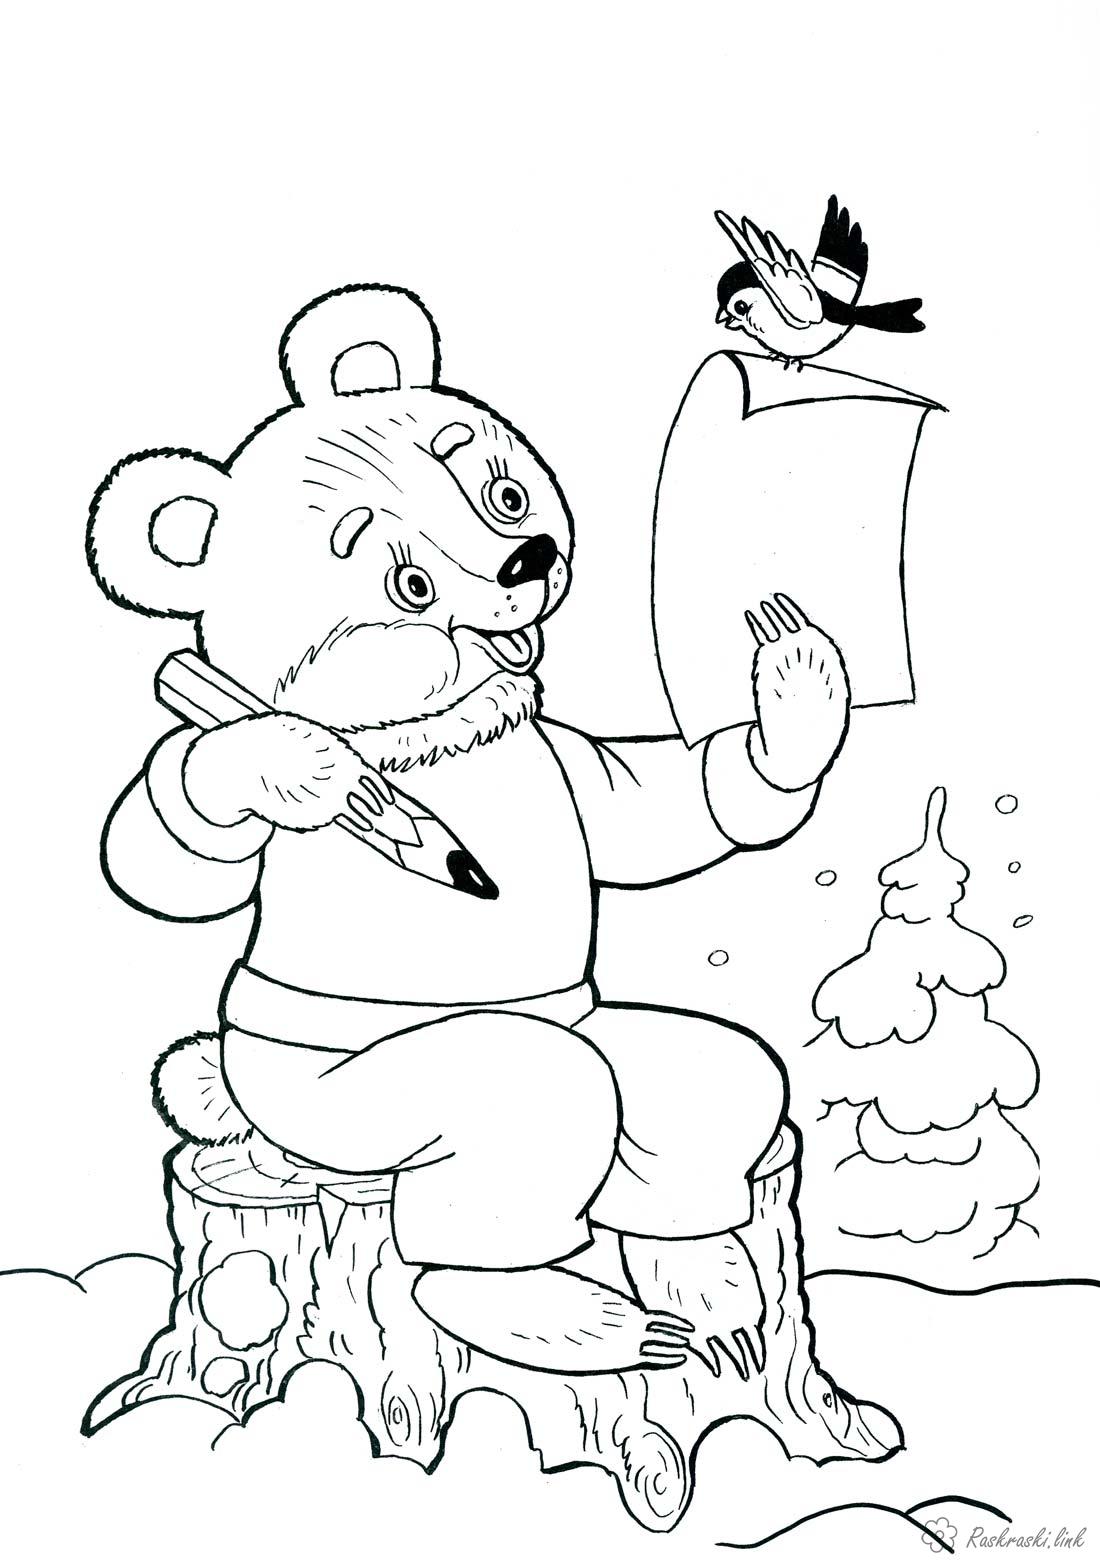 Розмальовки морозу дитяча новорічна розфарбування, ведмедик пише лист Діду Морозу